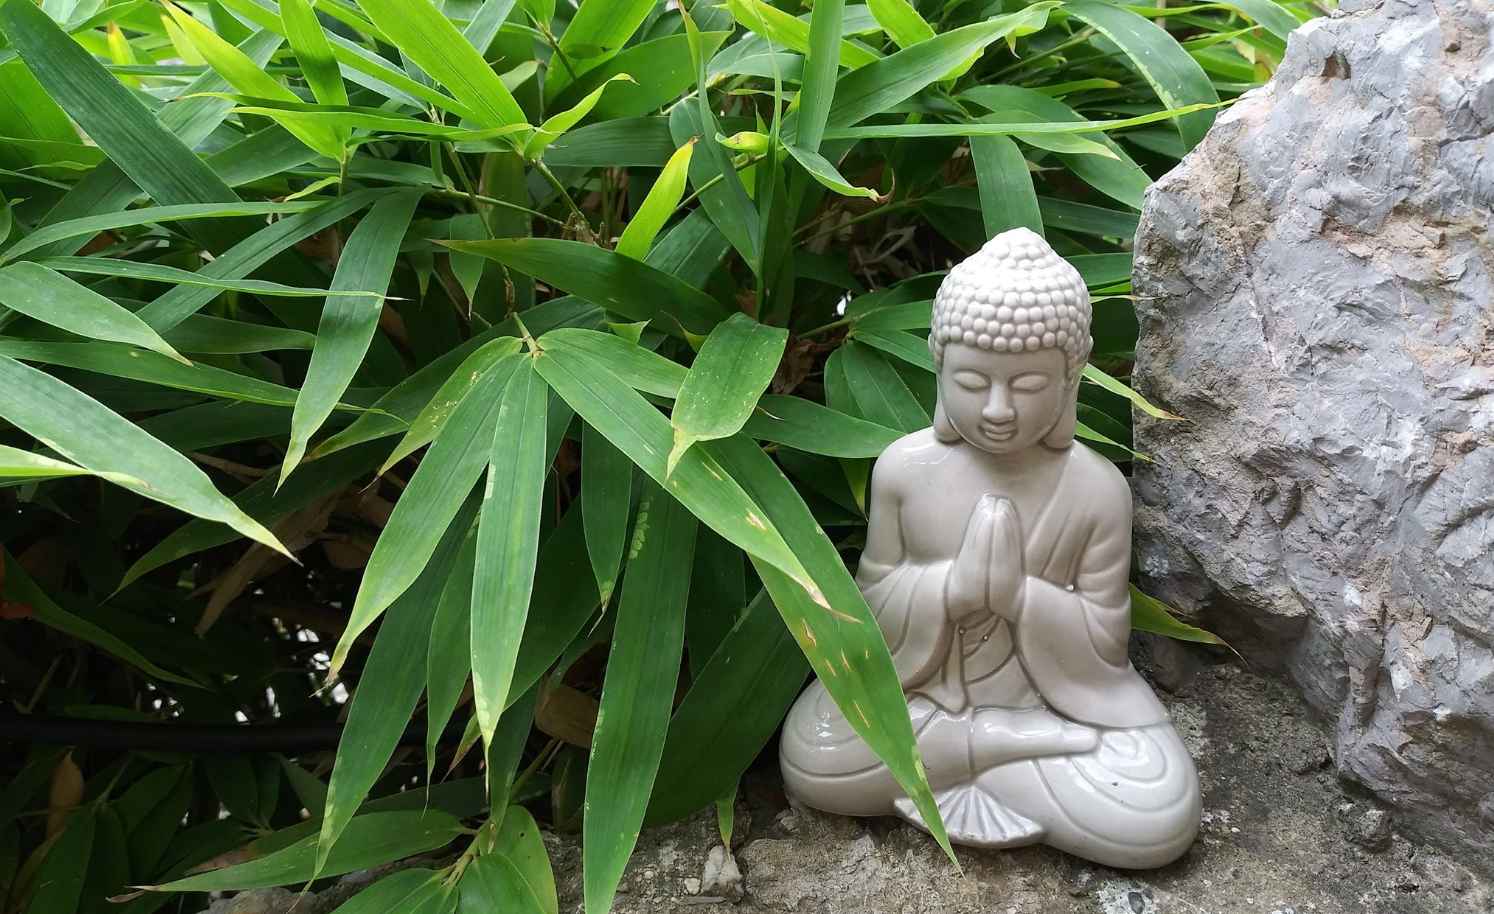 Buddha and Bamboo for good luck